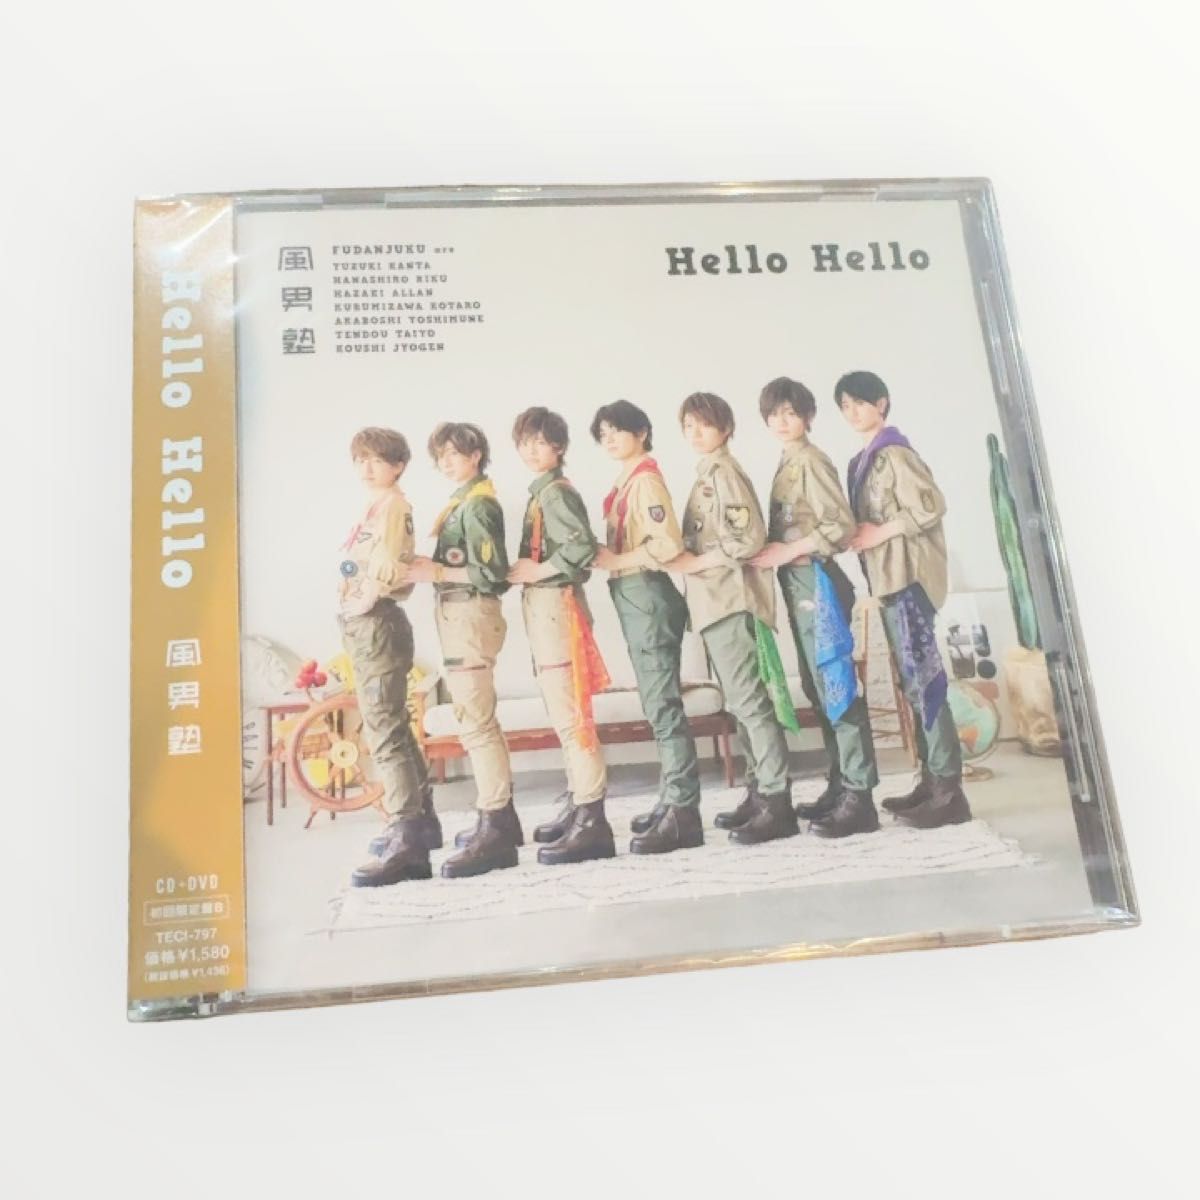 風男塾 (腐男塾) Hello Hello CD+DVD 初回限定盤B